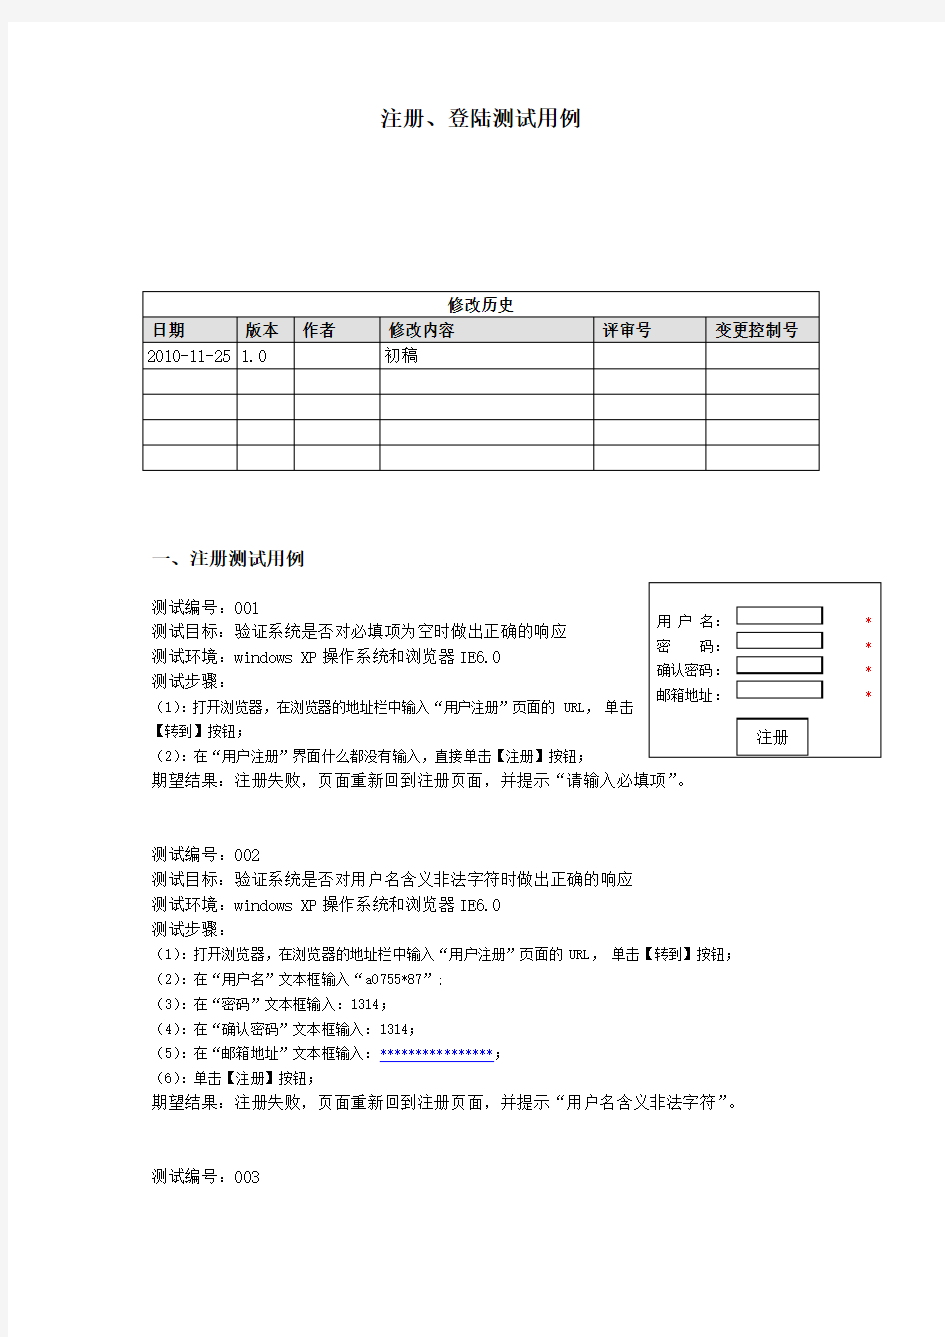 登录、注册功能的测试用例设计